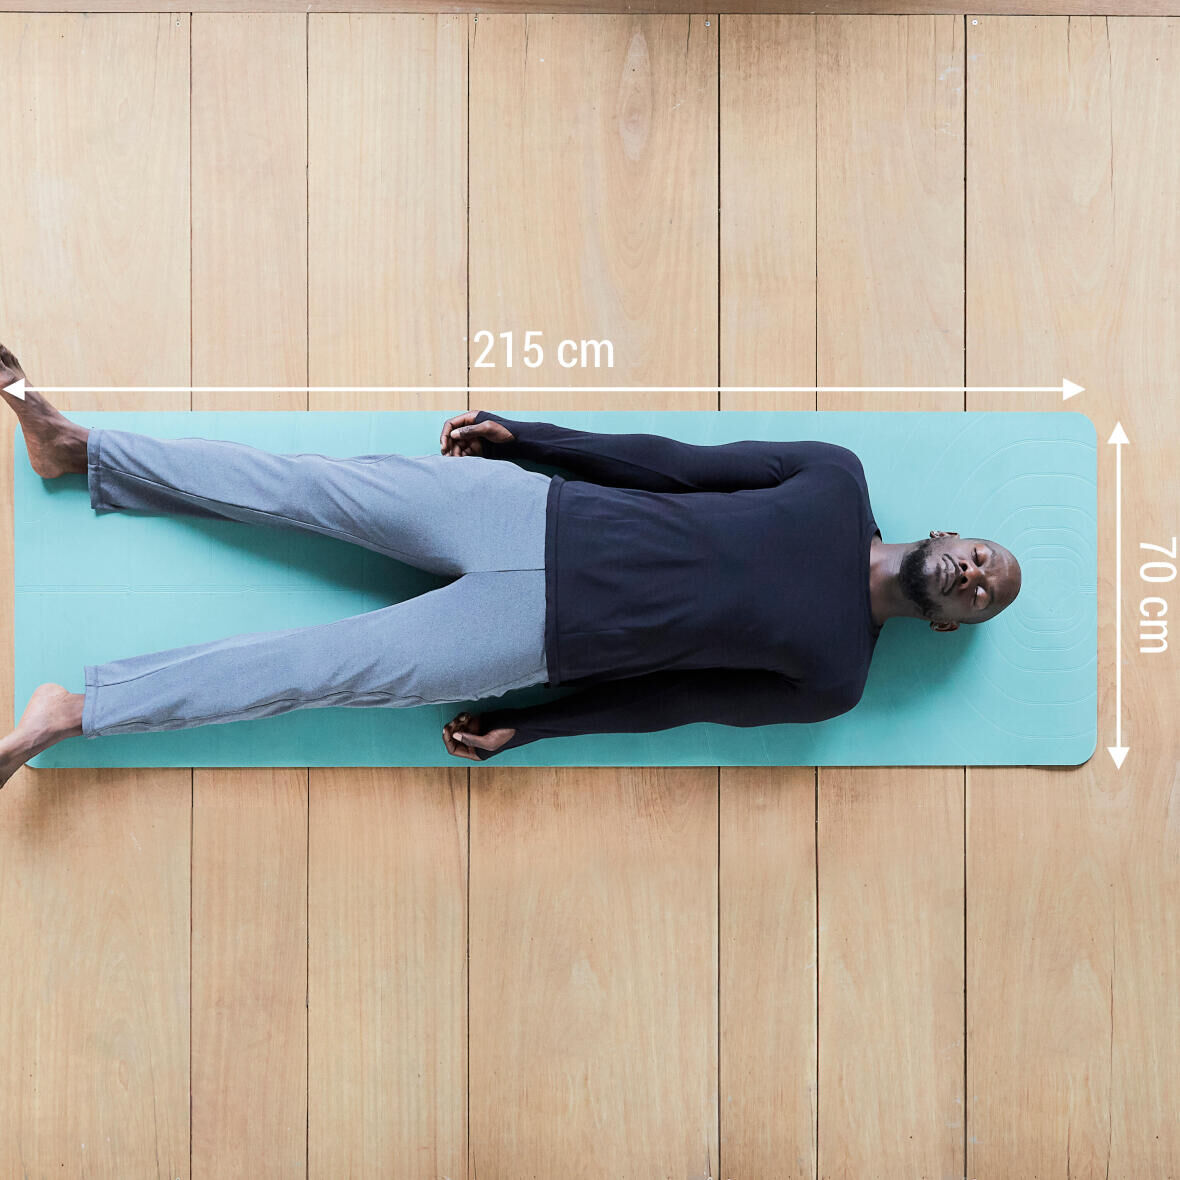 5mm Yoga Mat XL